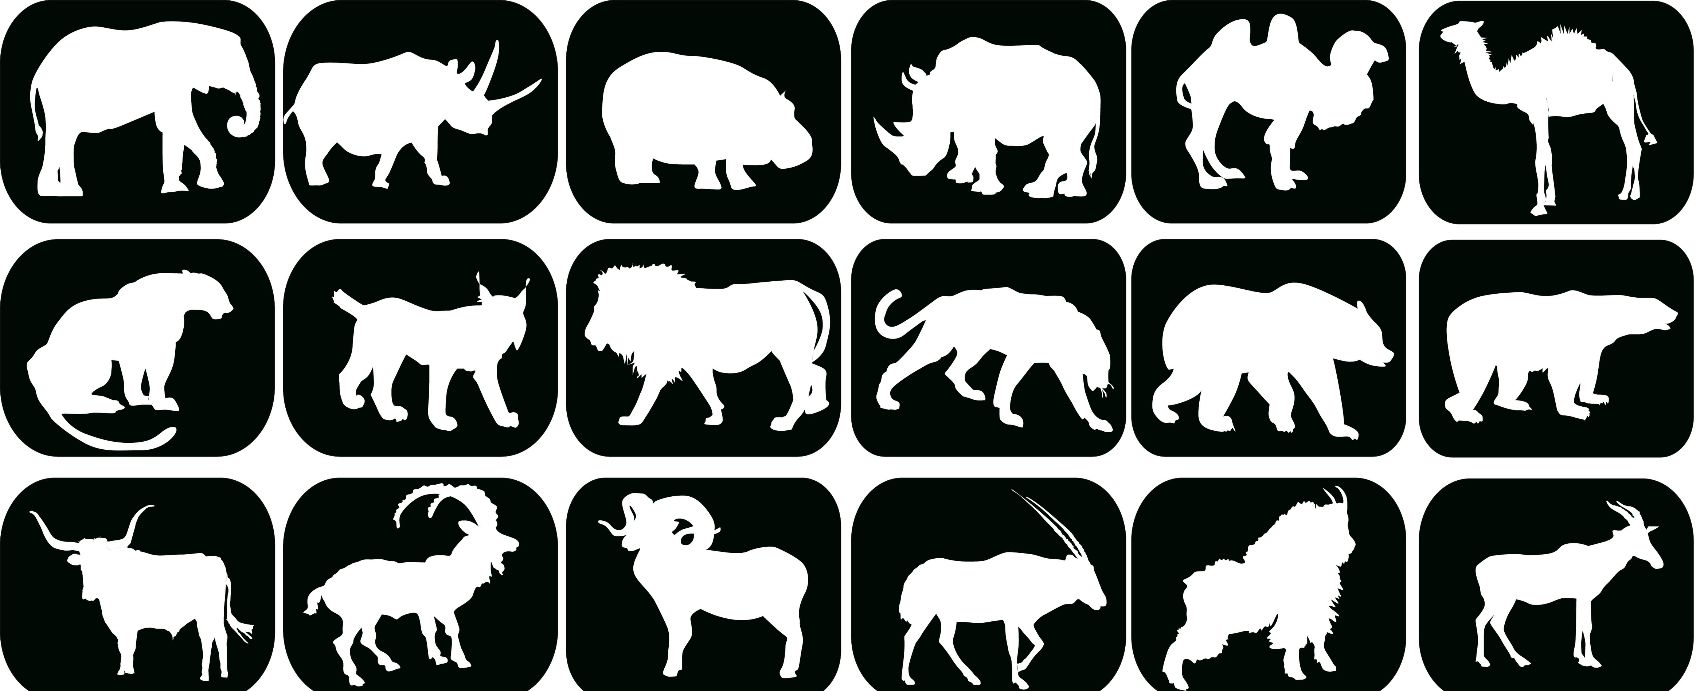 La symbolique animale dans un logo